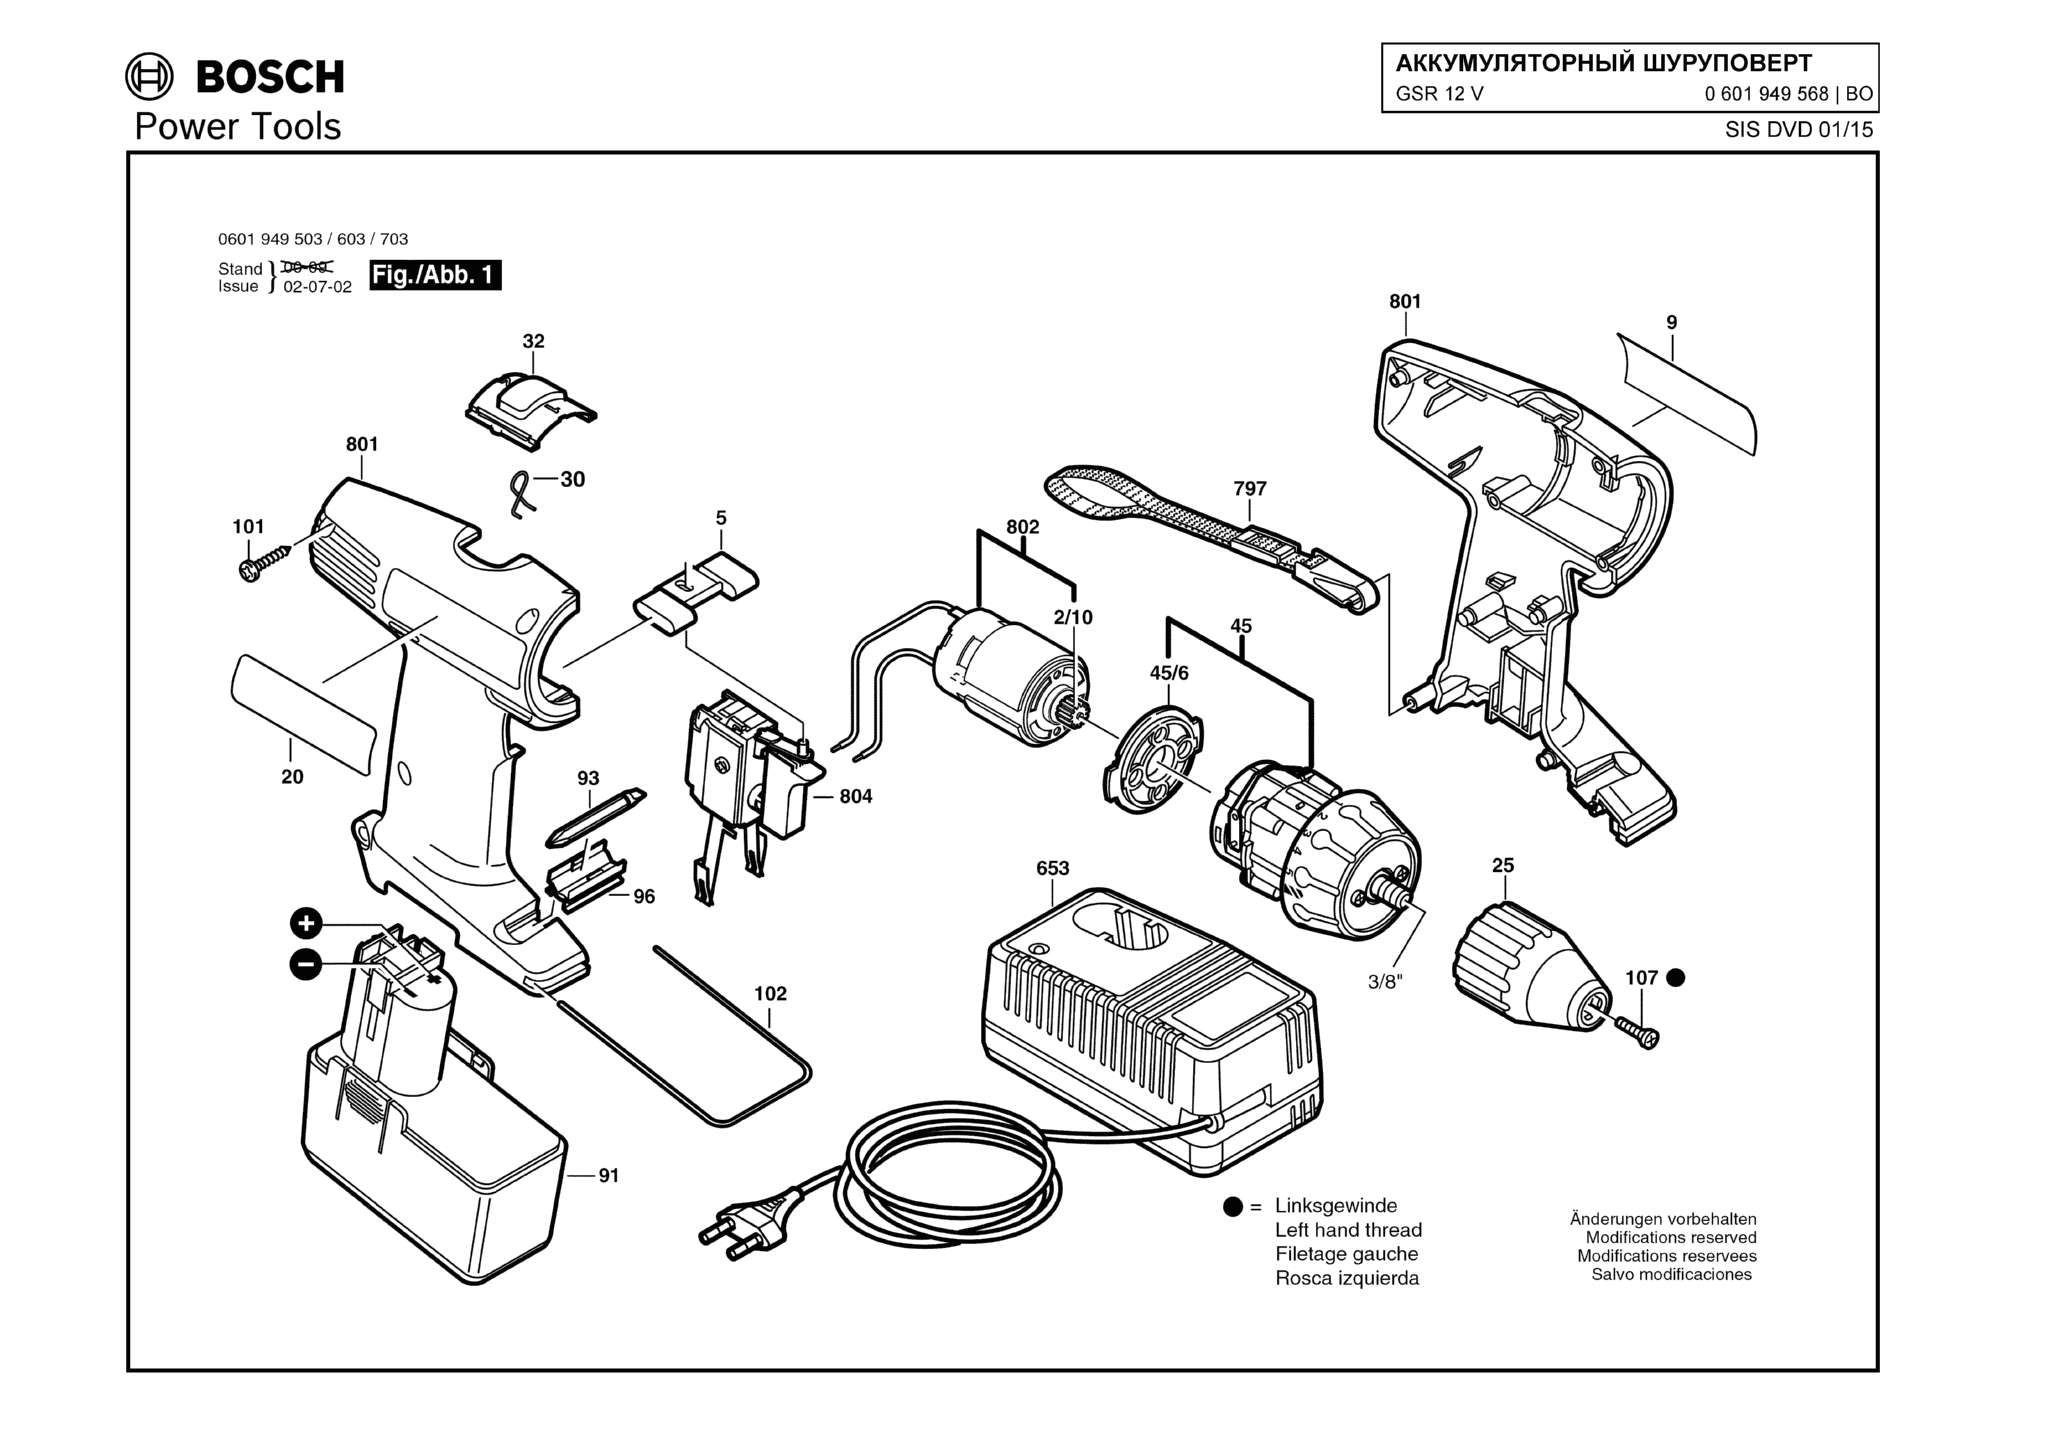 Запчасти, схема и деталировка Bosch GSR 12 V (ТИП 0601949568)